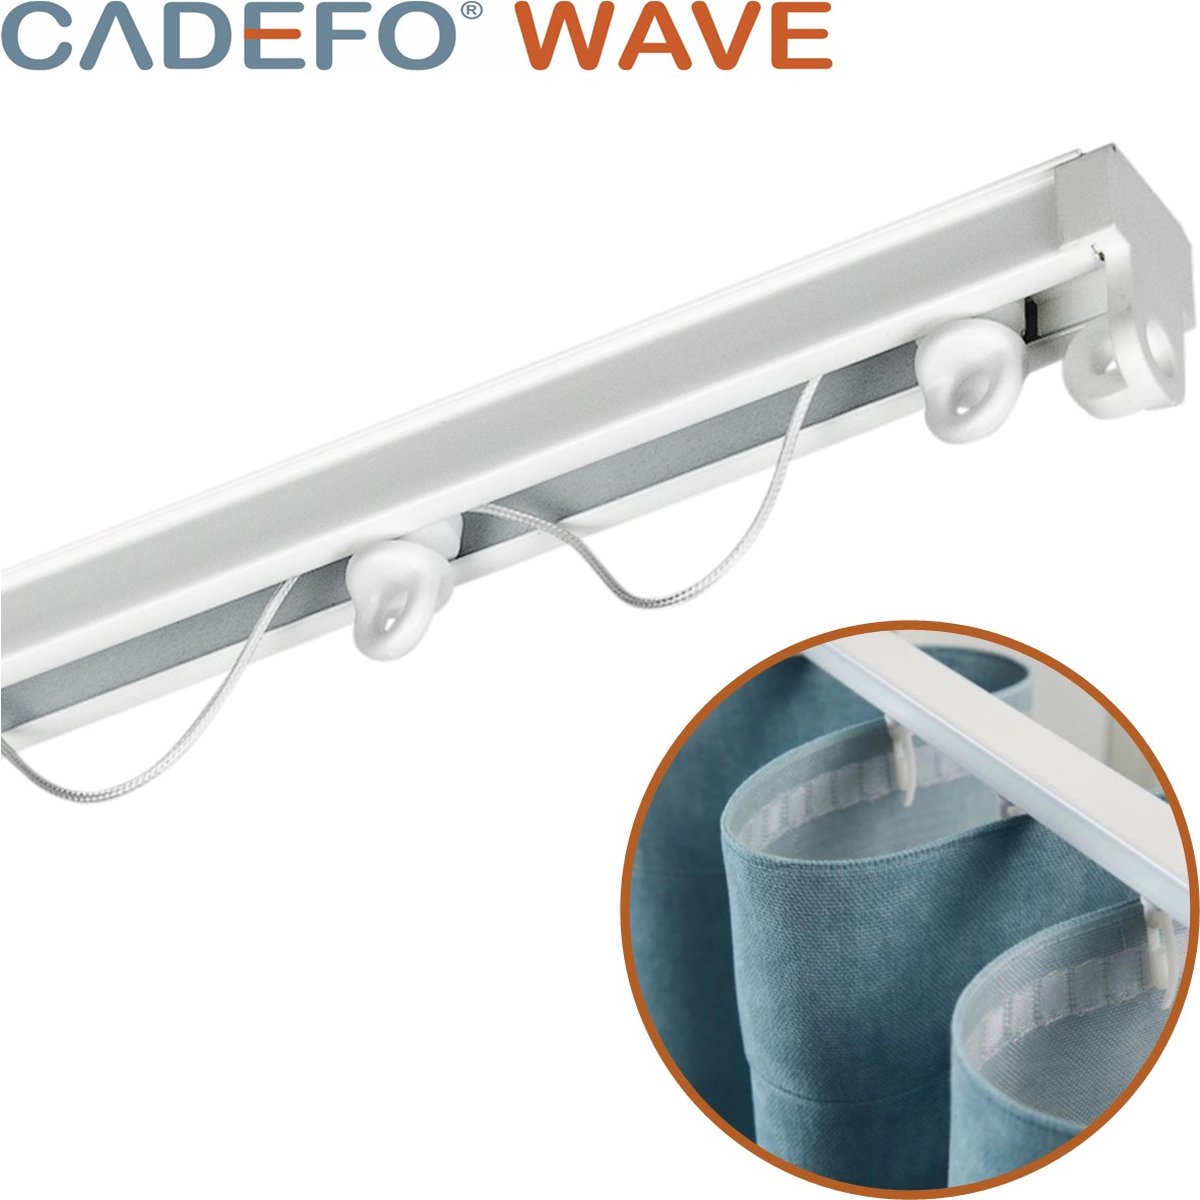 CADEFO WAVE (401 - 450 cm) Gordijnrails - Compleet op maat! - UIT 1 STUK - Leverbaar tot 6 meter - Plafondbevestiging - Lengte 439 cm